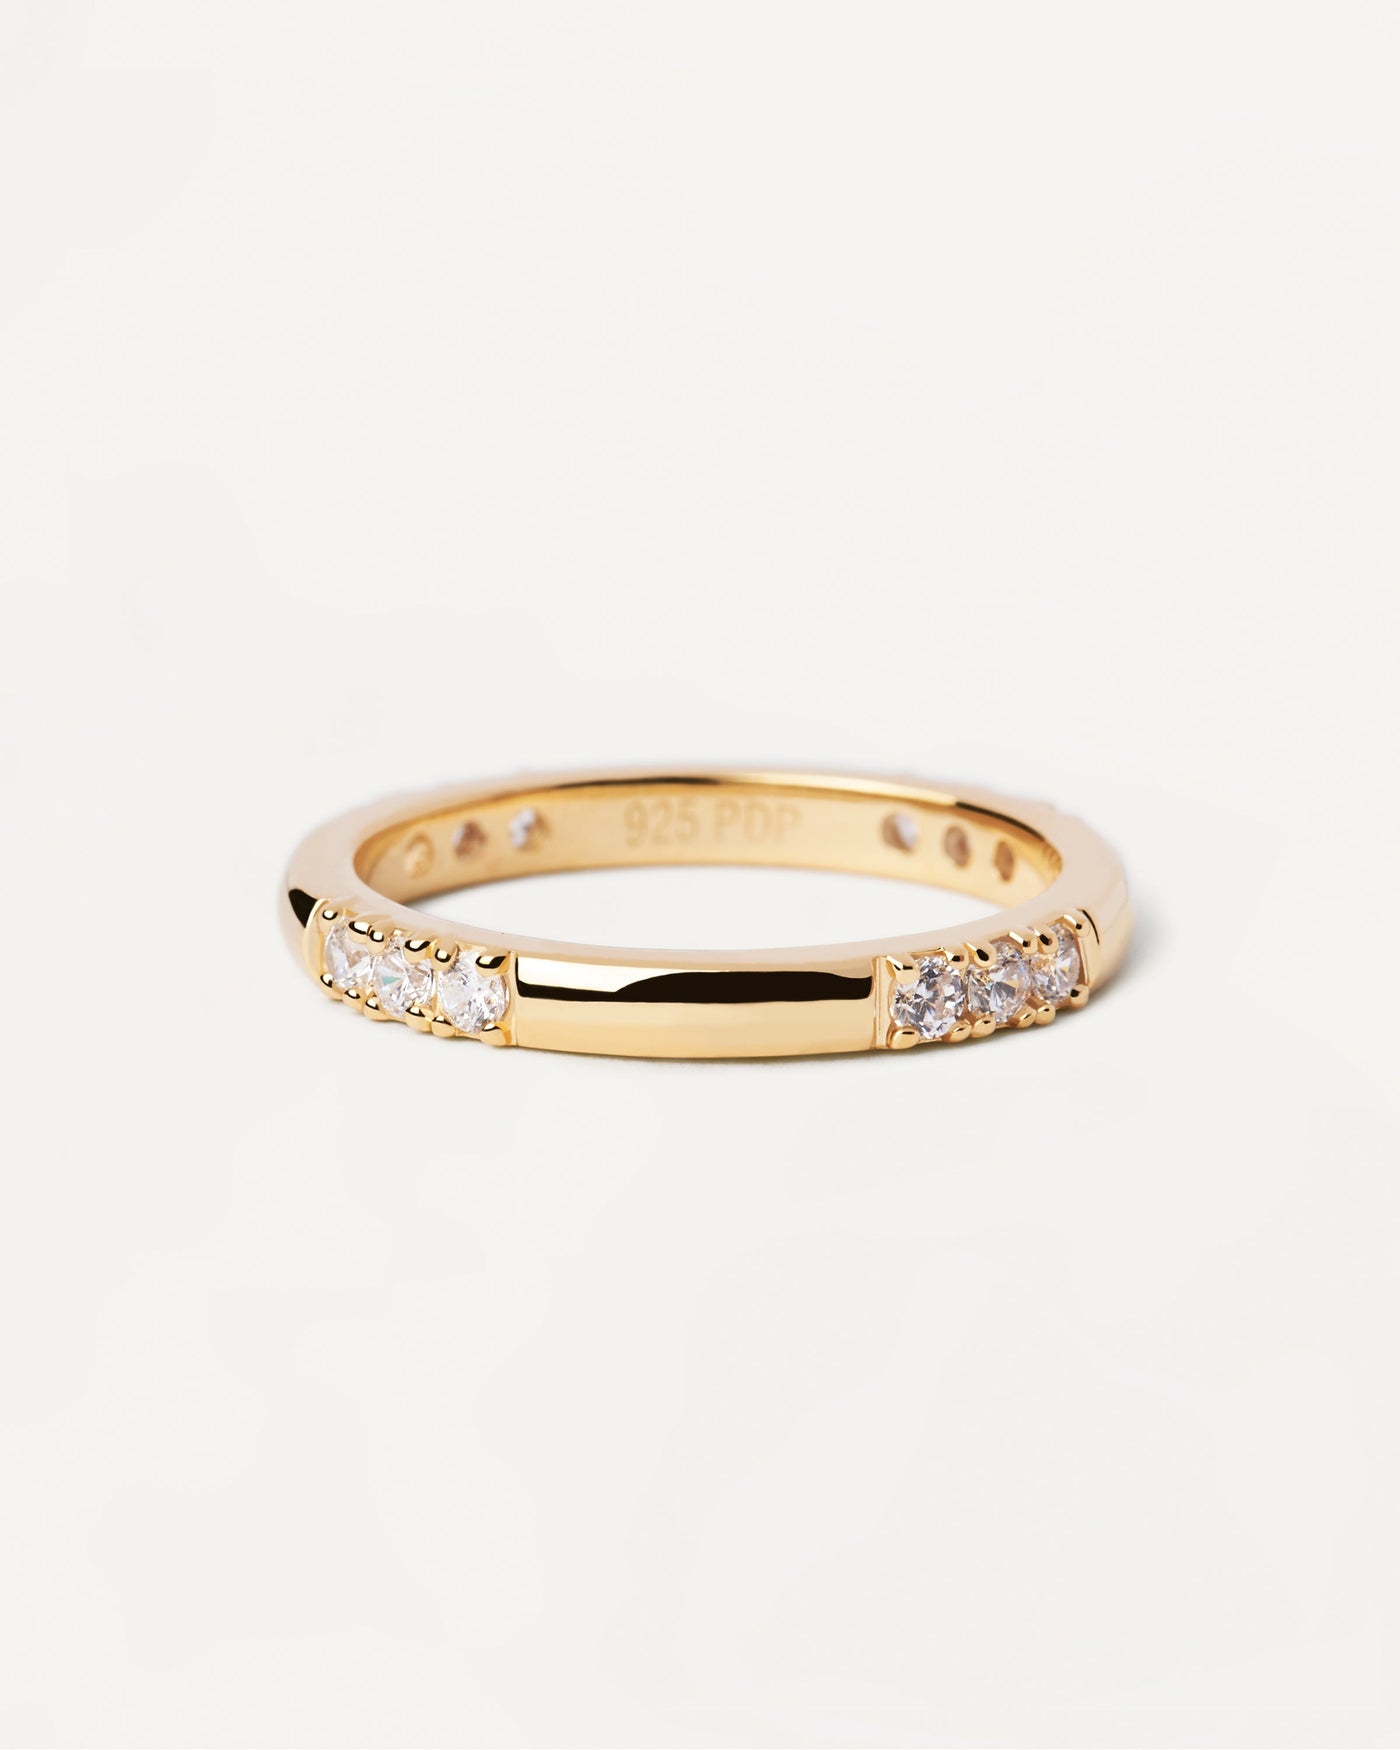 Anillo Fabi. Elegante anillo de plata con baño de oro y circonitas blancas. Consigue las últimas novedades de PDPAOLA. Haz tu pedido de forma segura y obtén este Best Seller.